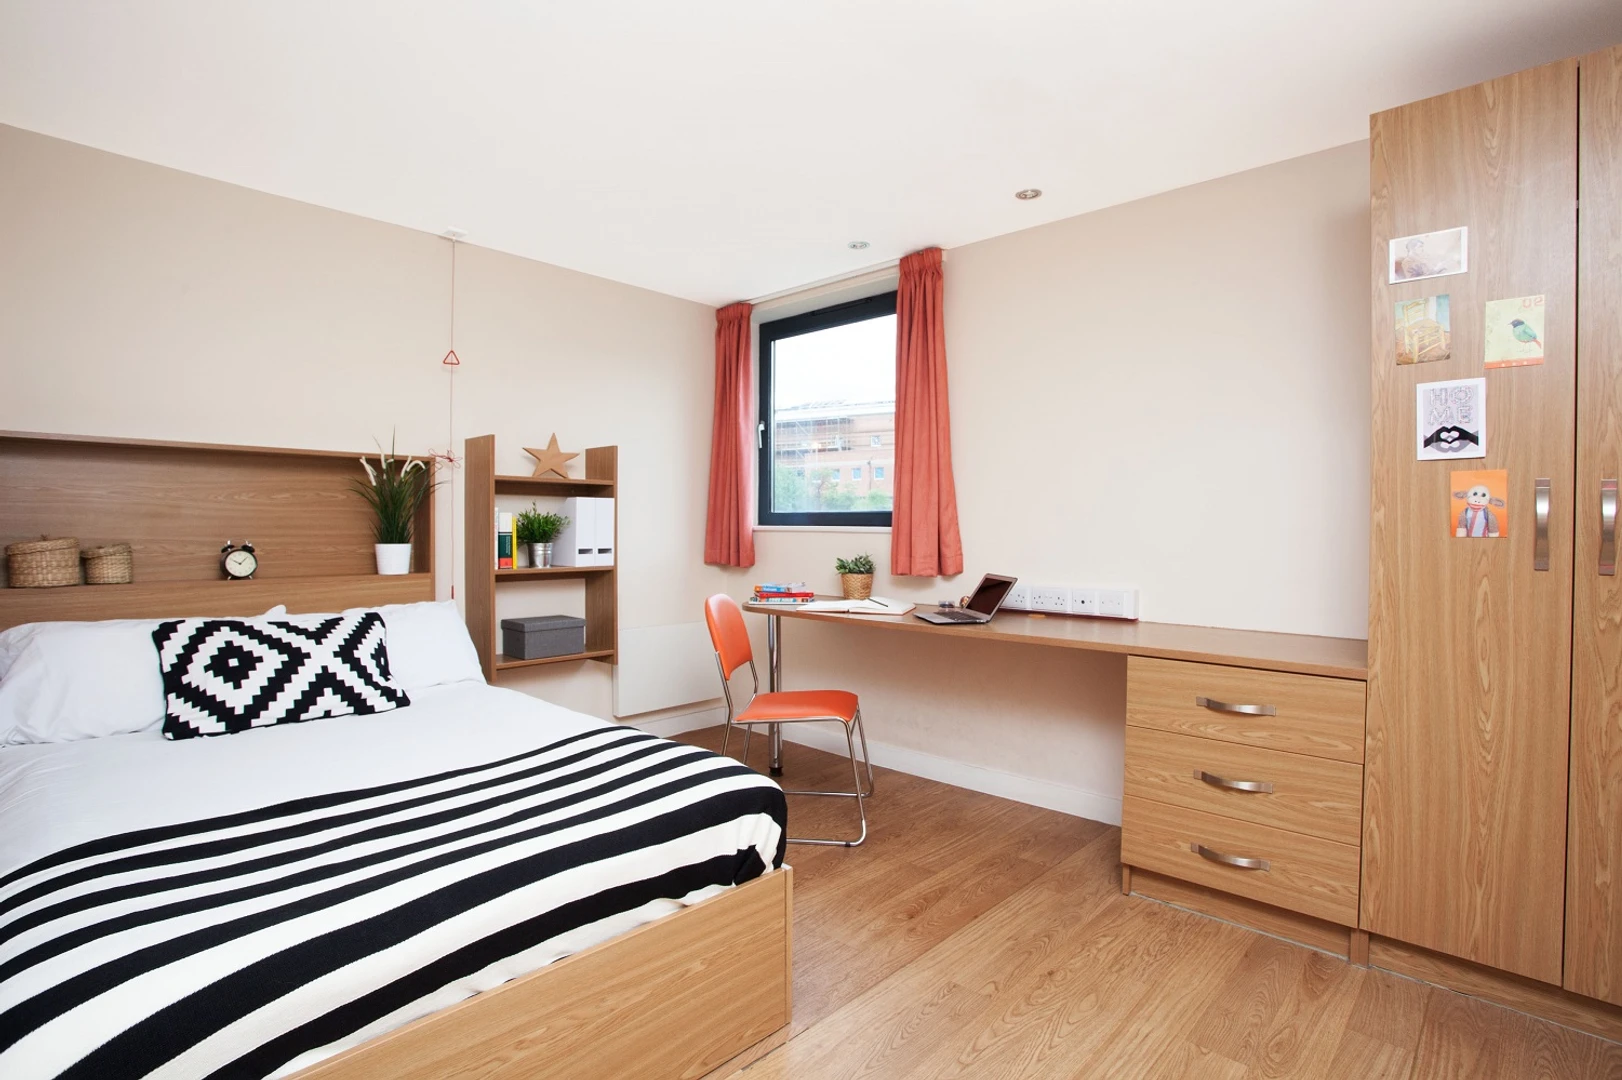 Alquiler de habitación en piso compartido en Glasgow